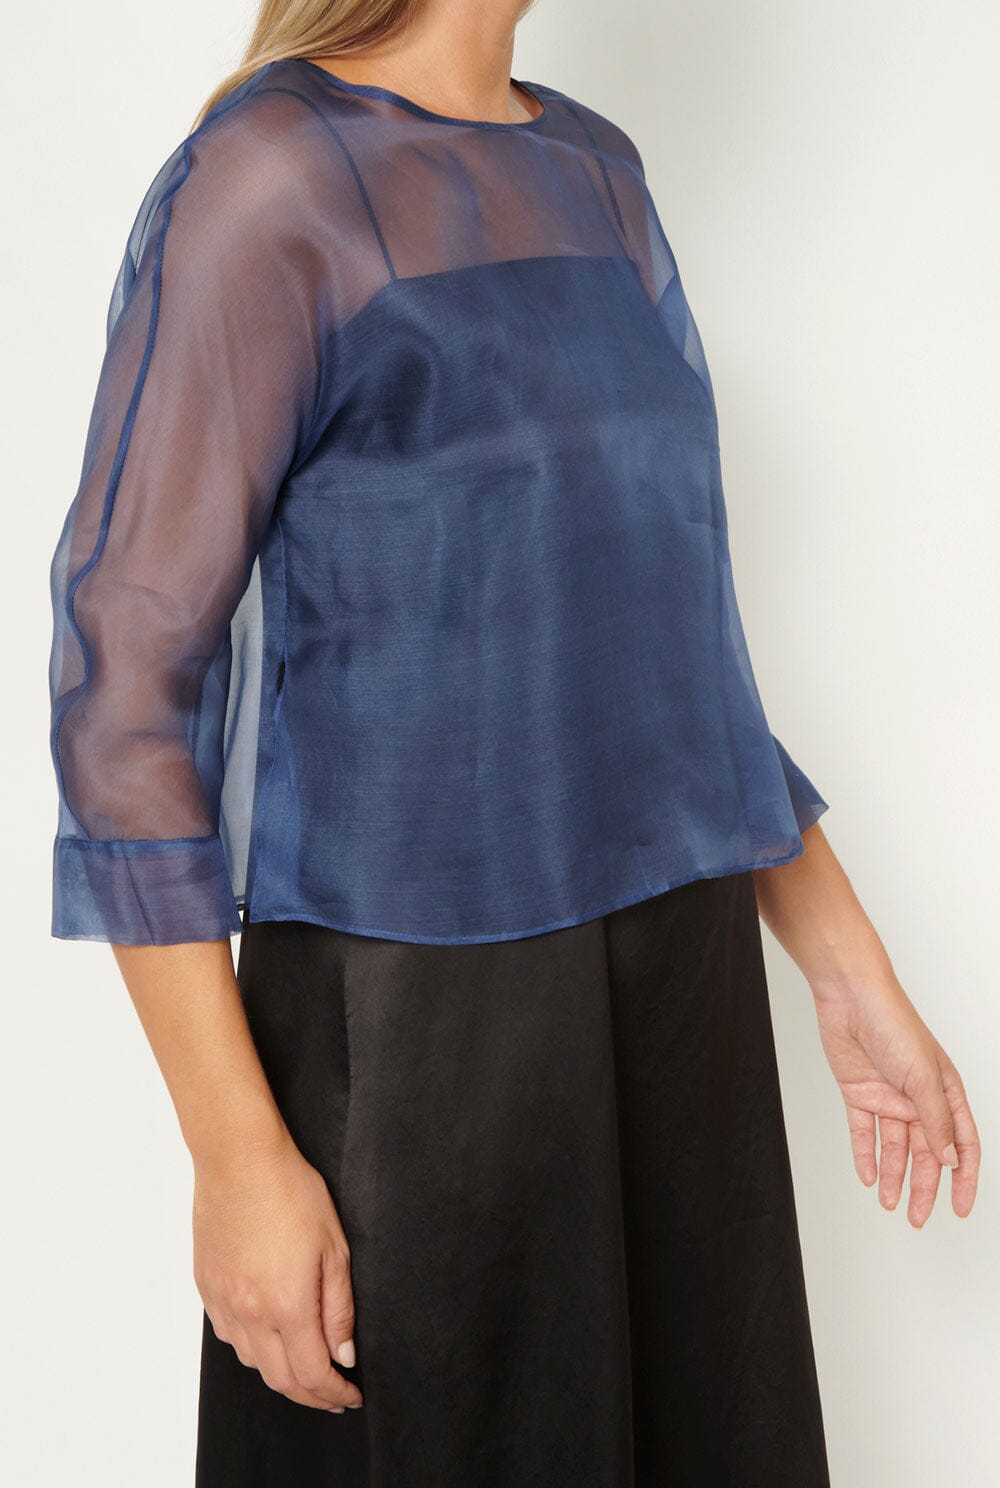 Lea Organza Blouse Indigo Blue Shirts & blouses Atelier Aletheia 